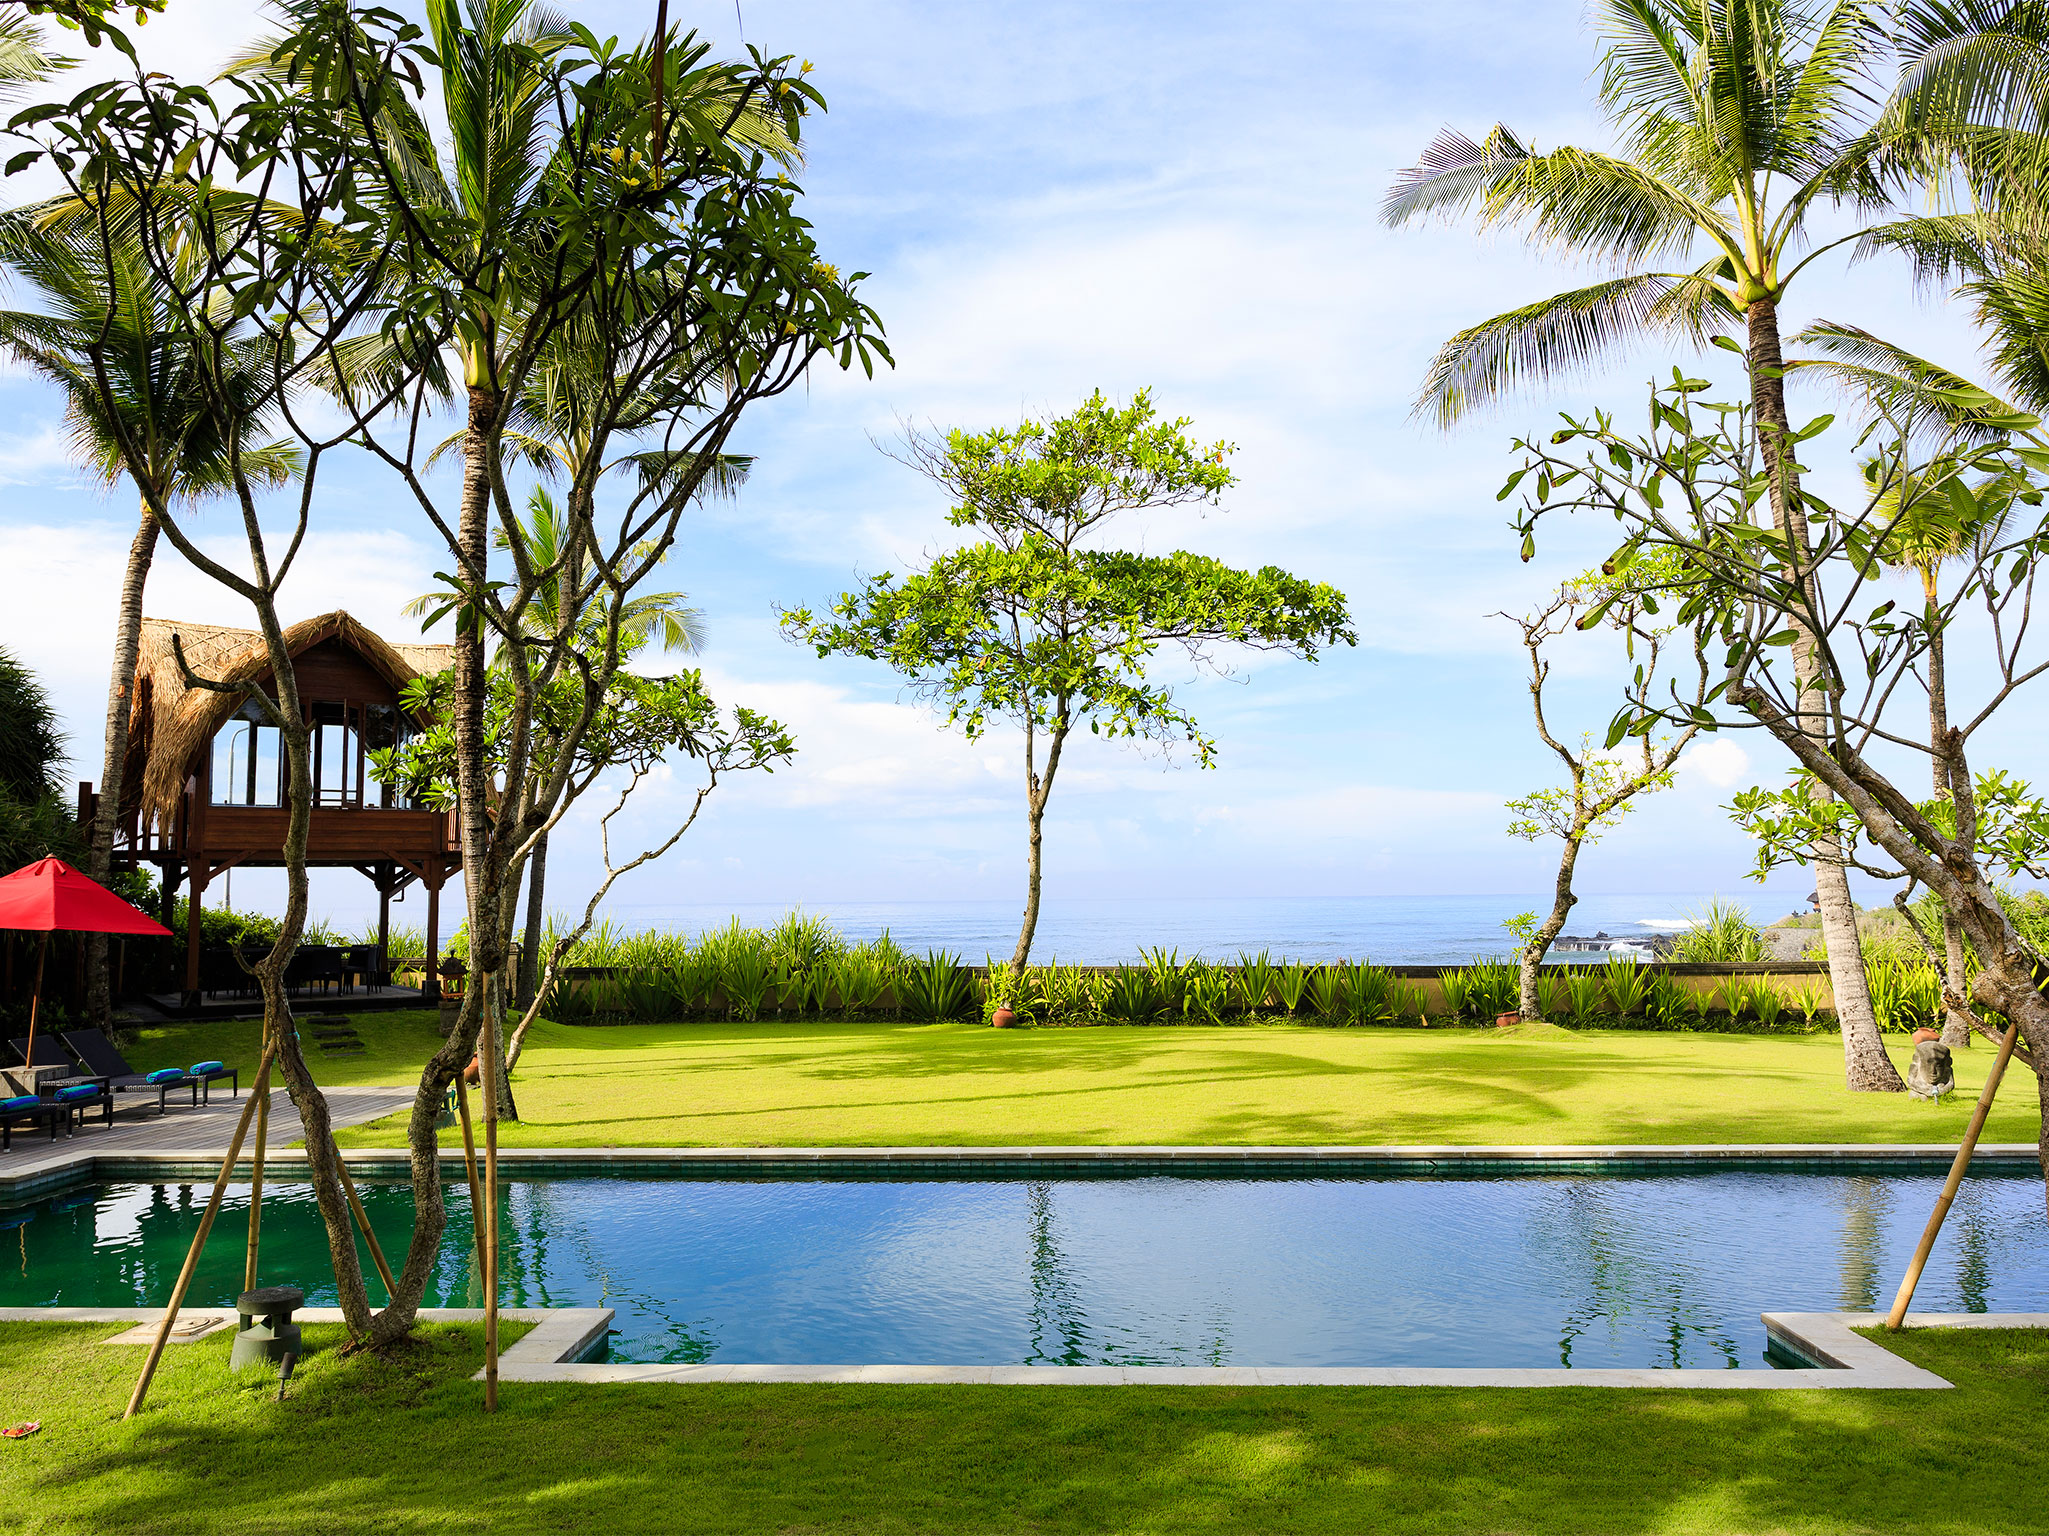 Villa Maridadi - Pool perfection - Villa Maridadi, Seseh-Tanah Lot, Bali